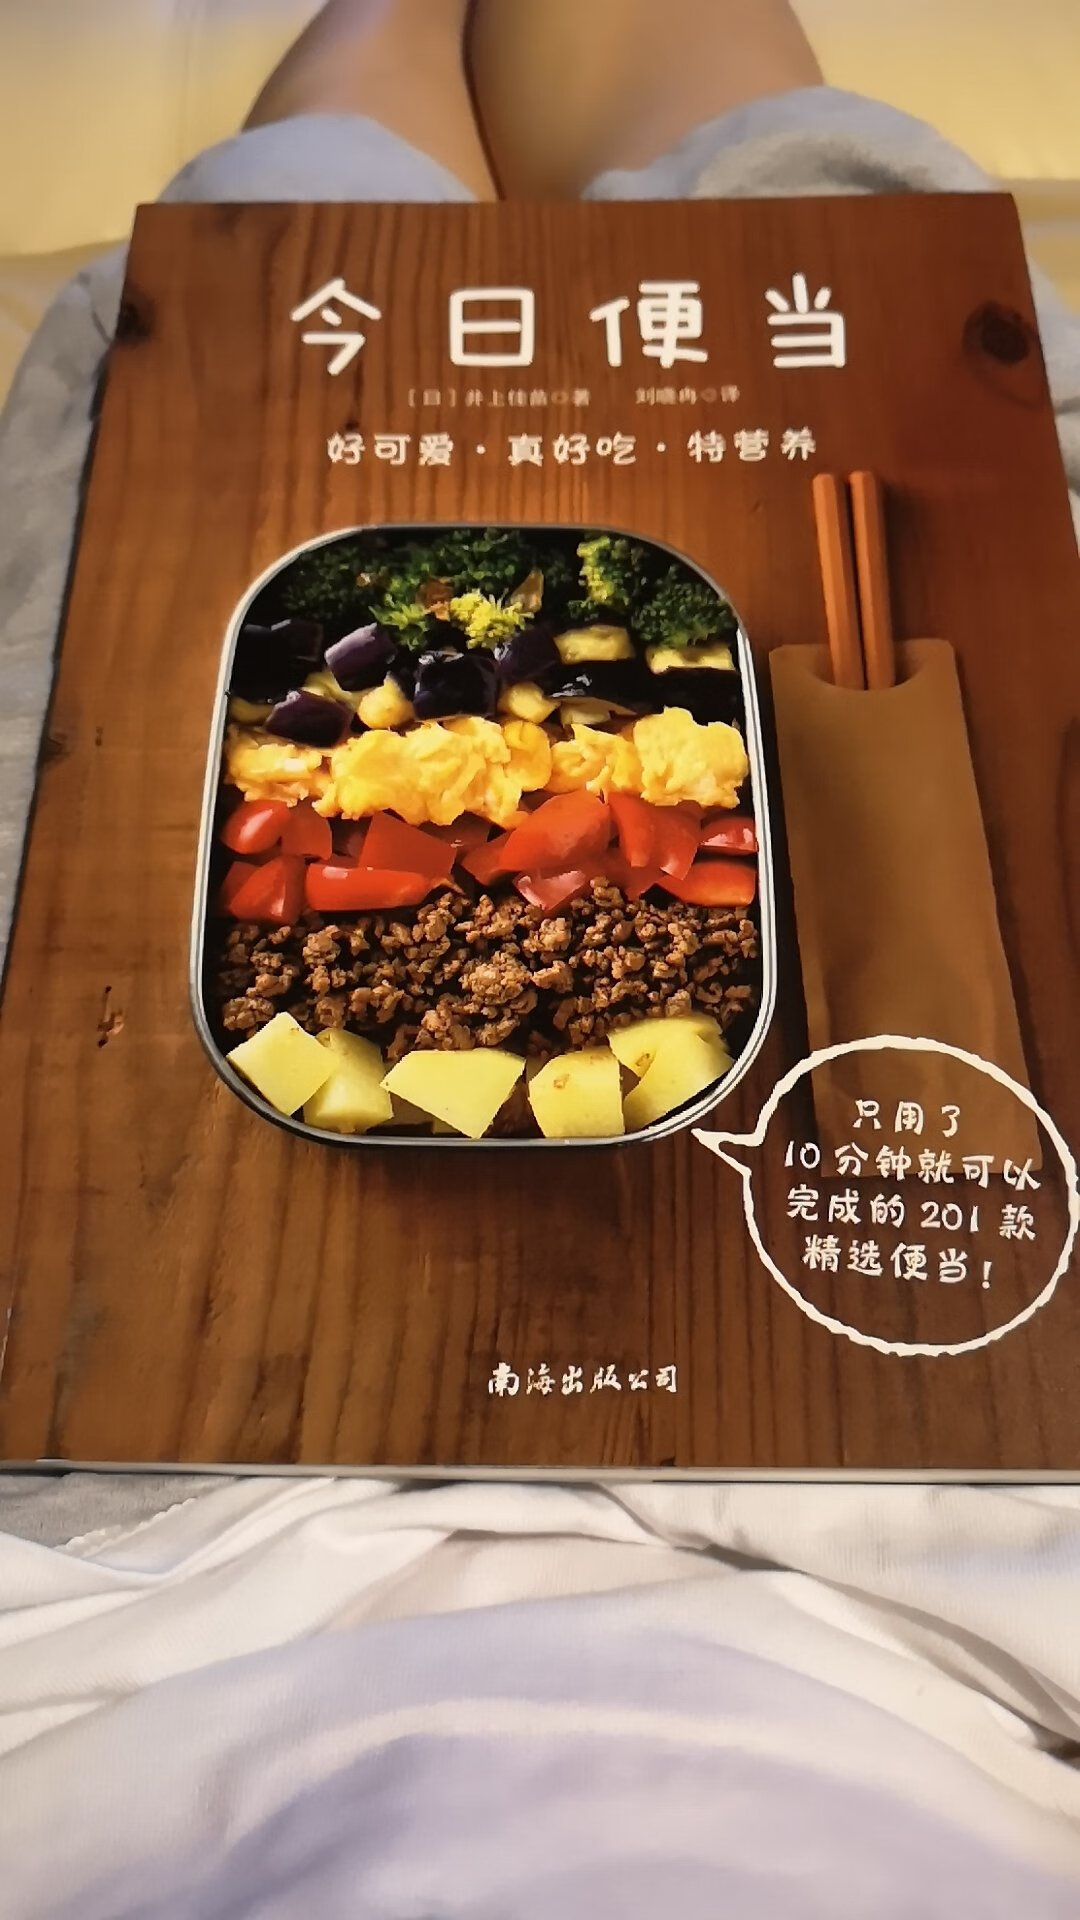 菜品制作很详尽，但很多食材调料都是日本的，这里很难买到，不太推荐。